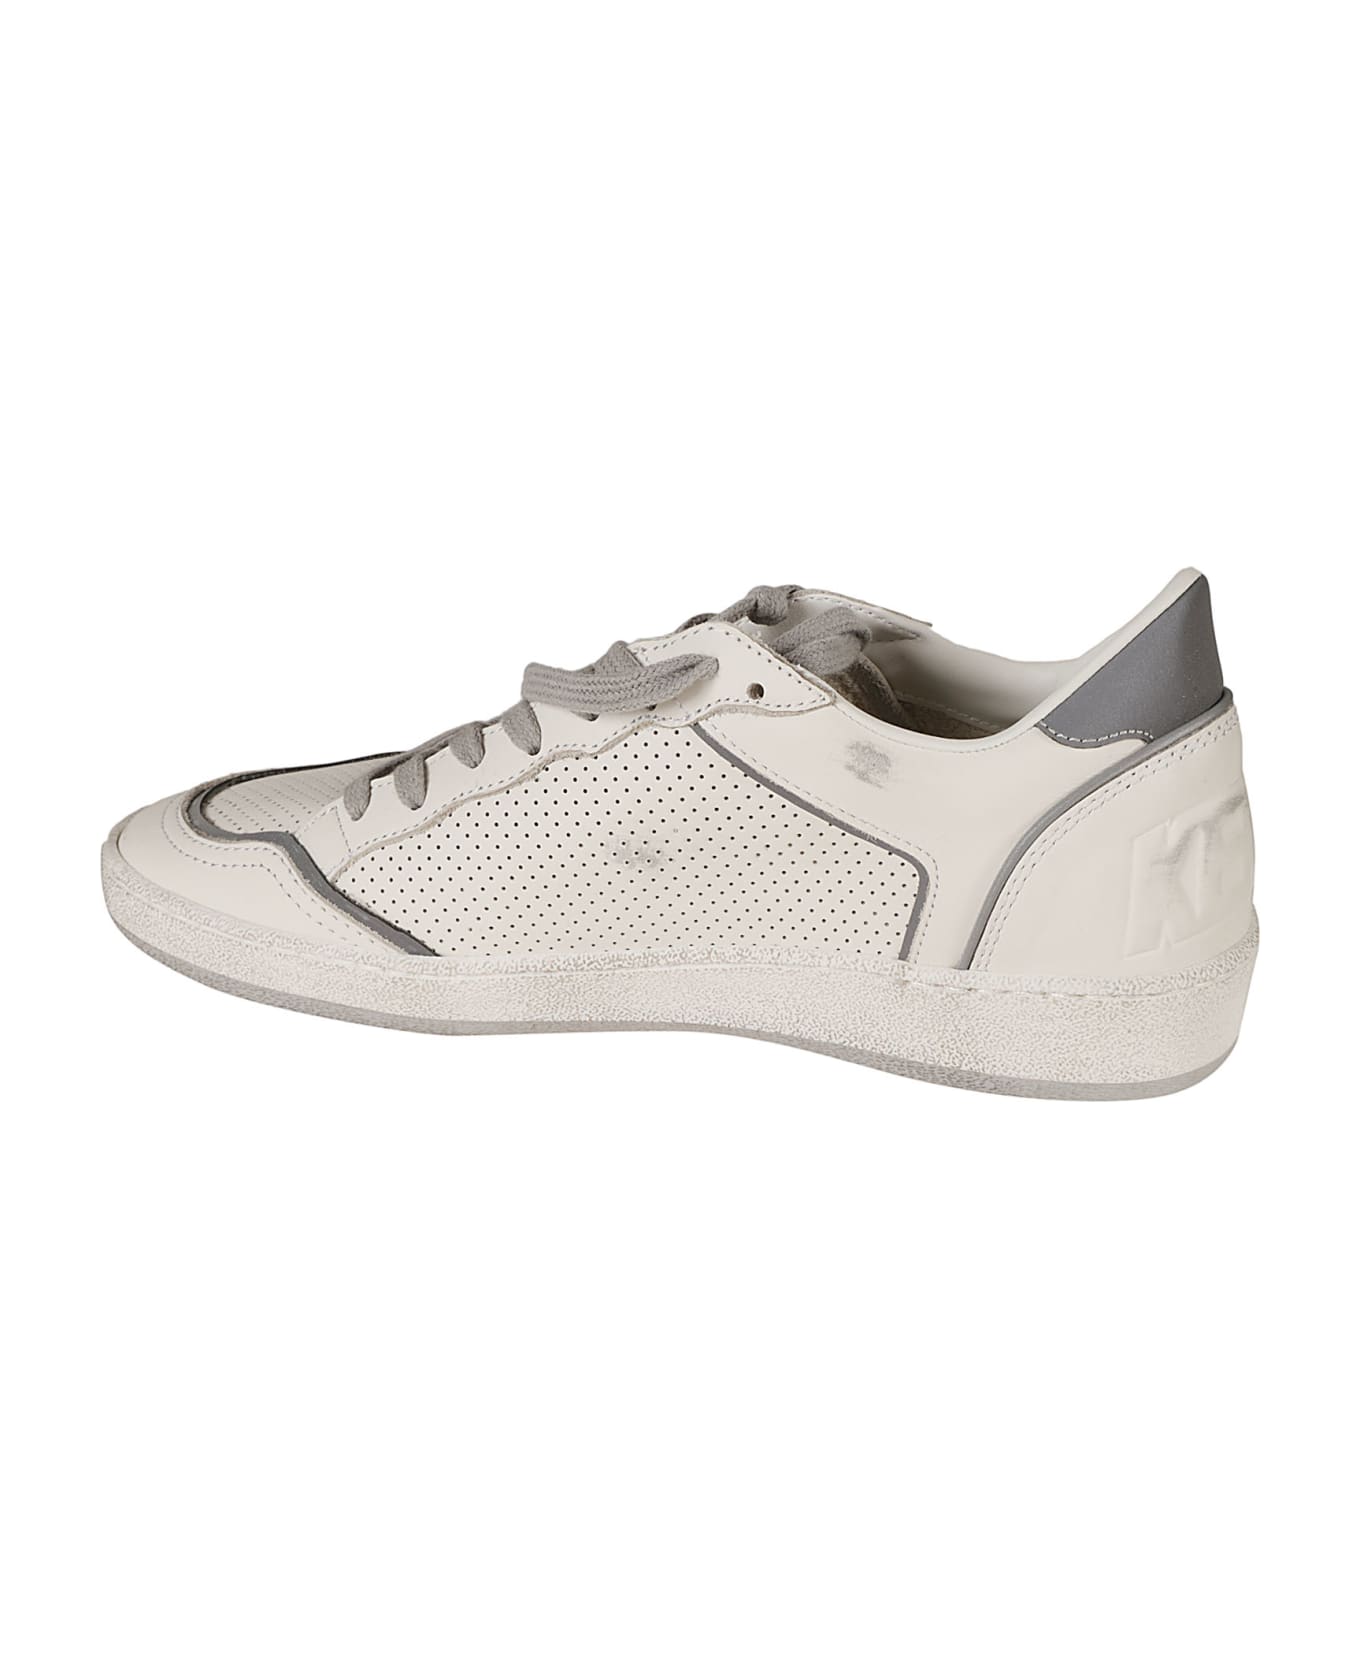 Golden Goose Ball Star Sneakers - White/Silver スニーカー